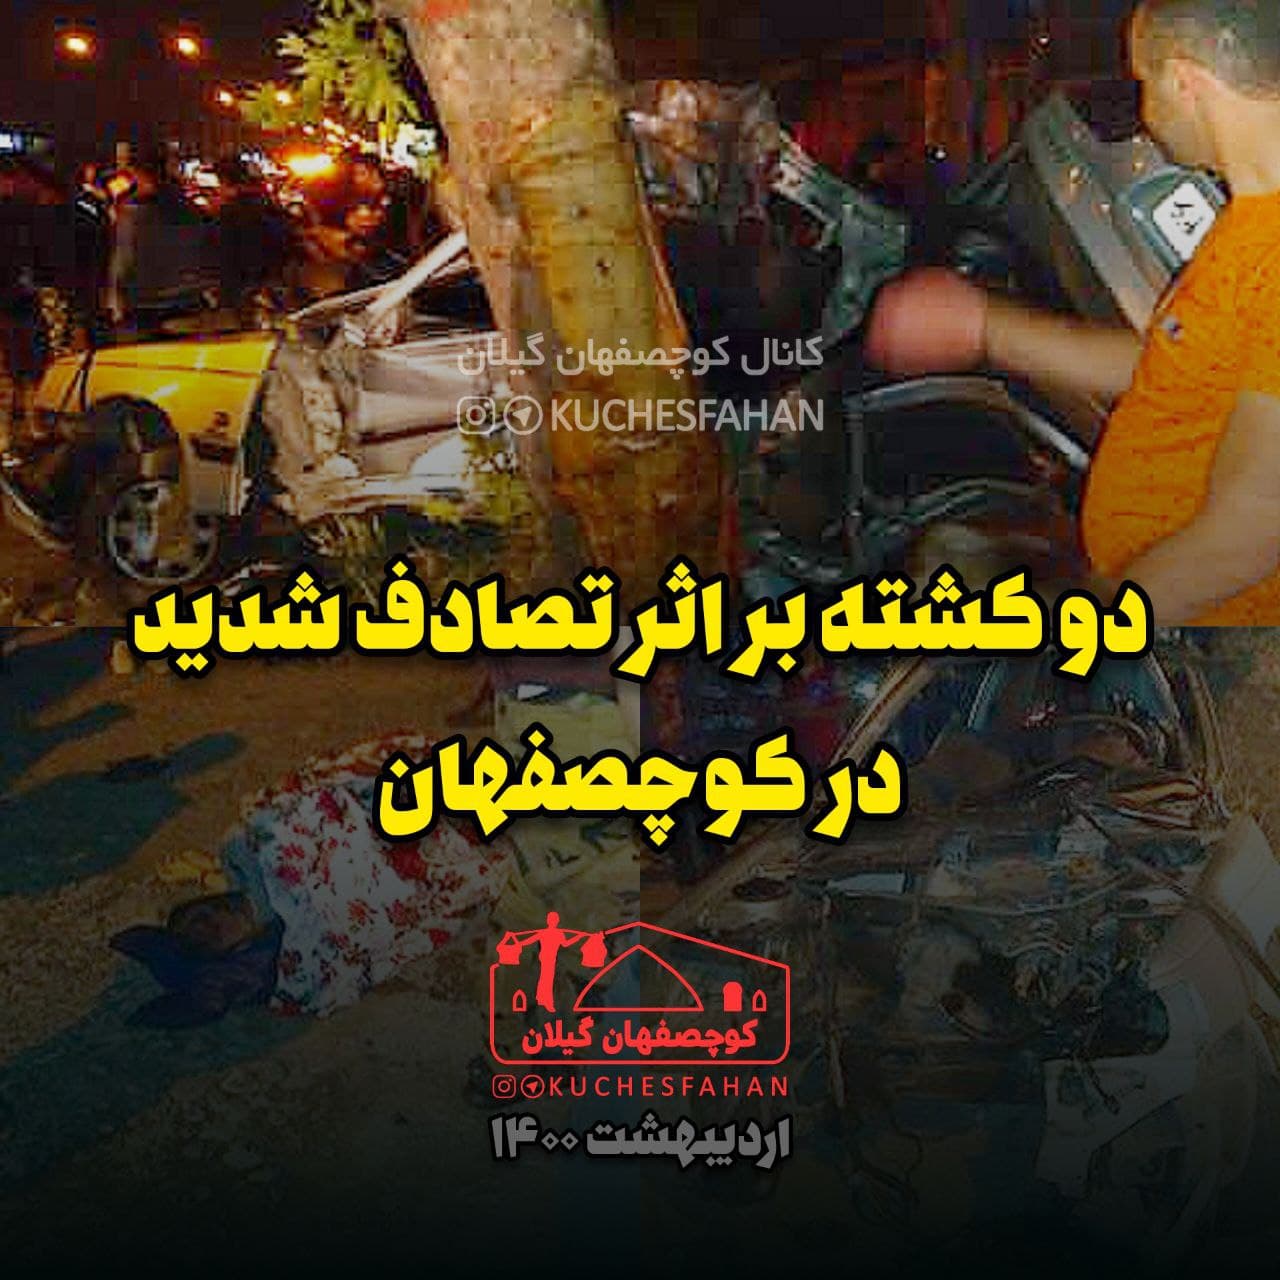 دو کشته بر اثر حادثه رانندگی در بخش کوچصفهان - گیلانستان